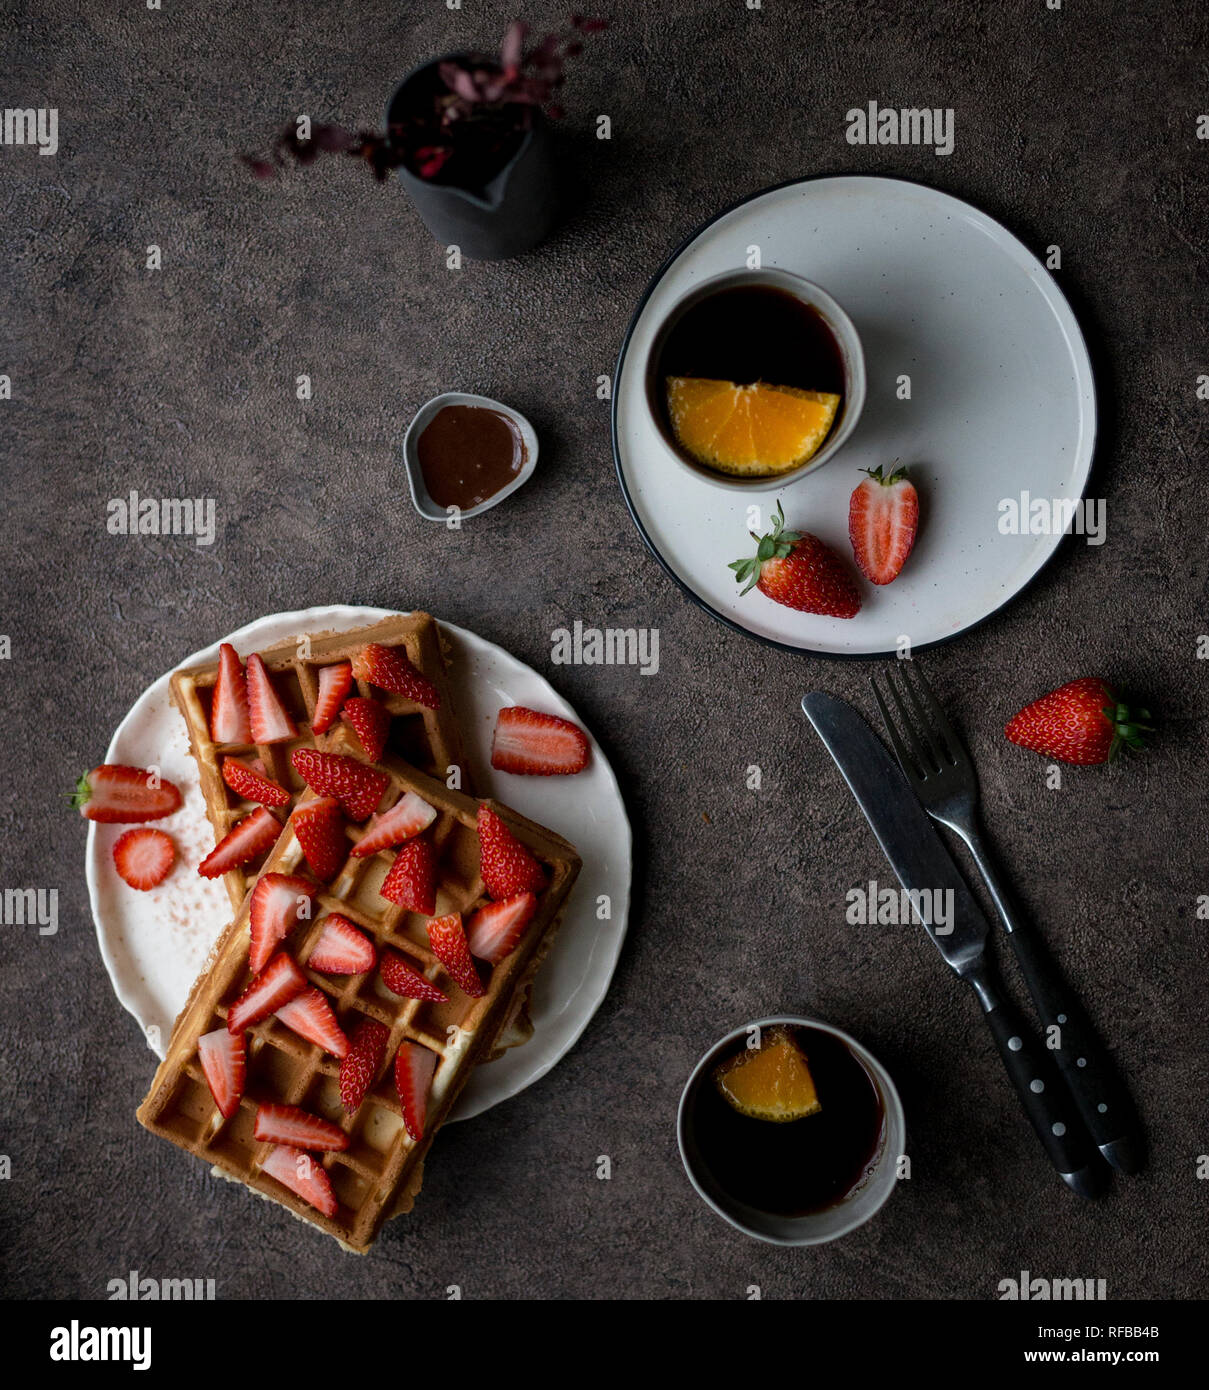 Belgique gaufres savoureuses avec des fraises fraîches à plaque blanche et deux tasse de thé au citron à l'arrière-plan sombre. Concept de style de vie sain pour le menu Banque D'Images